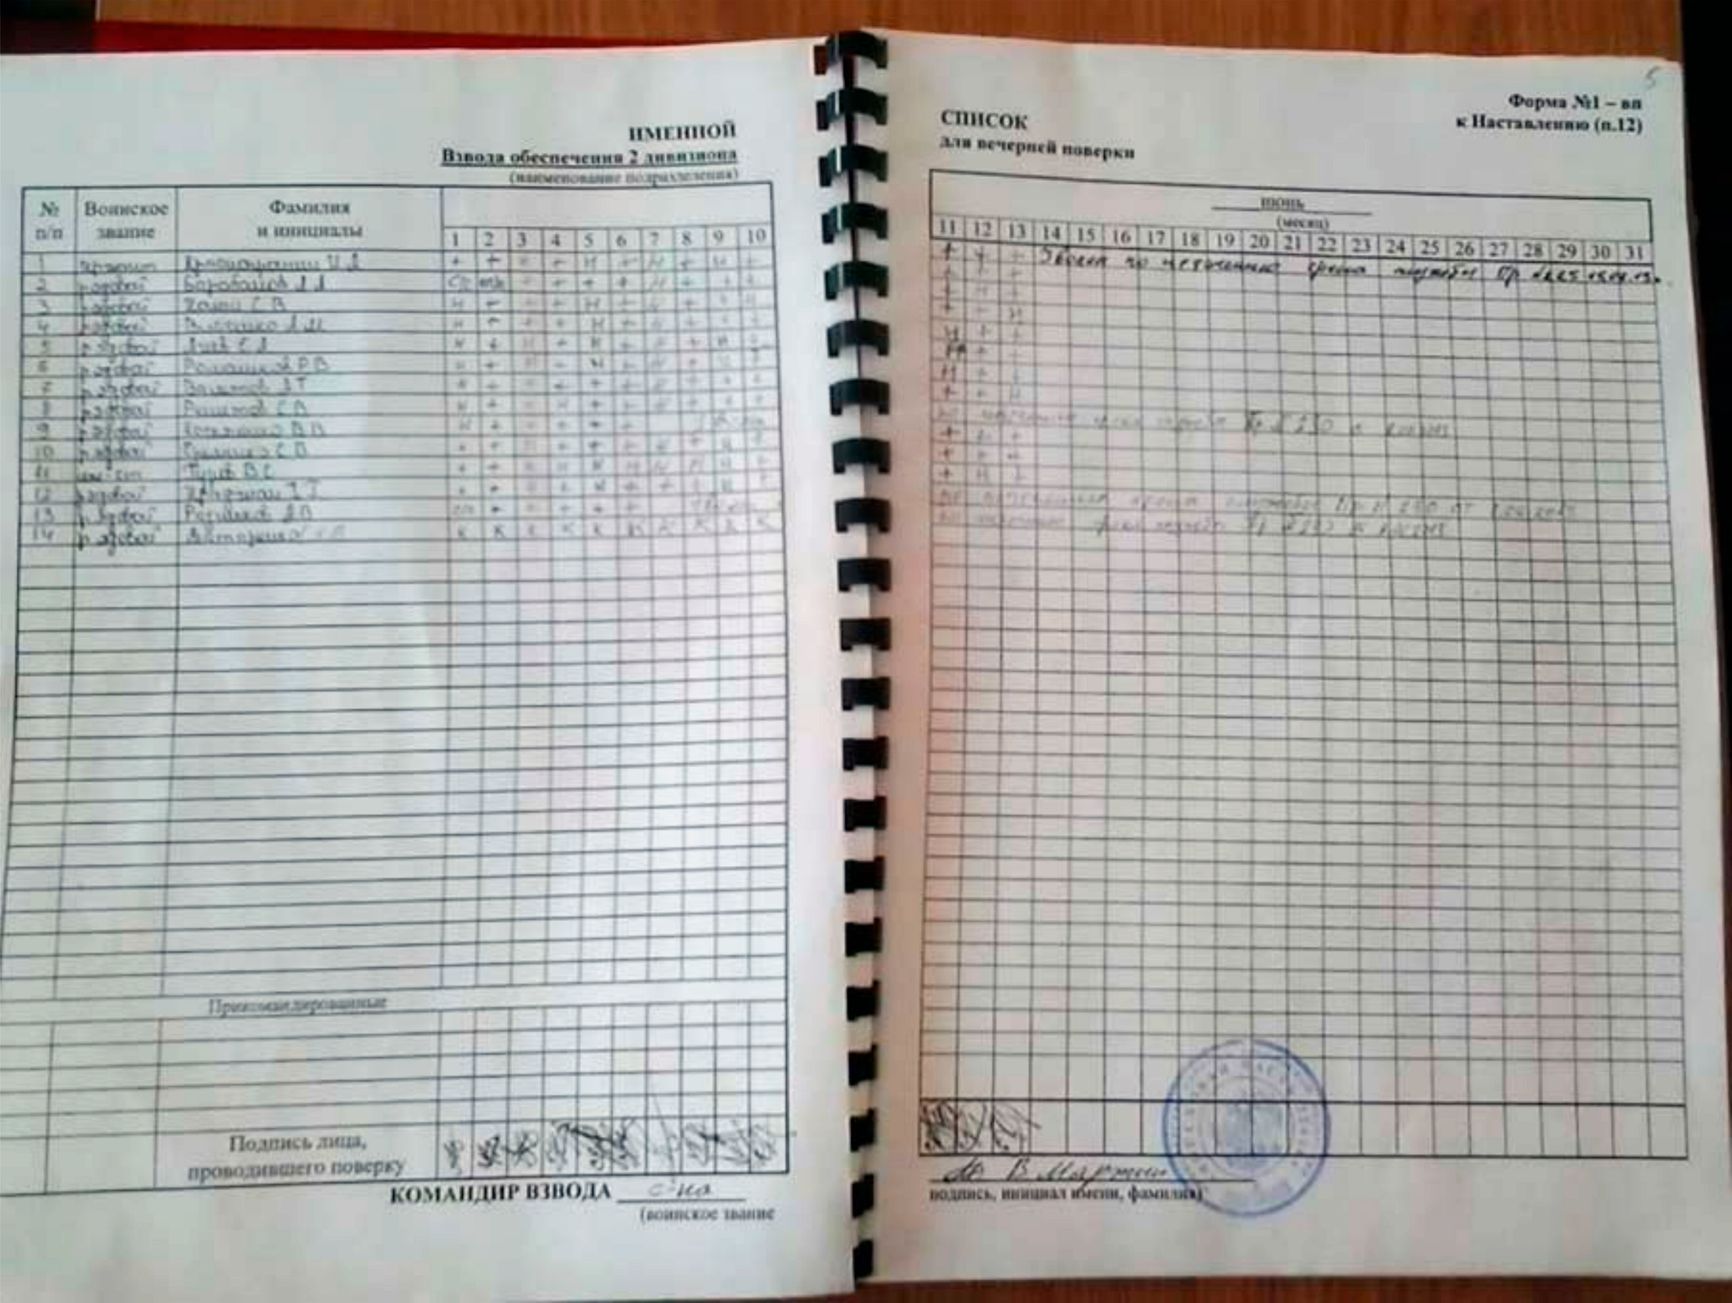 Именной список взвода Ивана Краснопрошина 2-го дивизиона 53-й зенитно-ракетной бригады от июня 2013 года